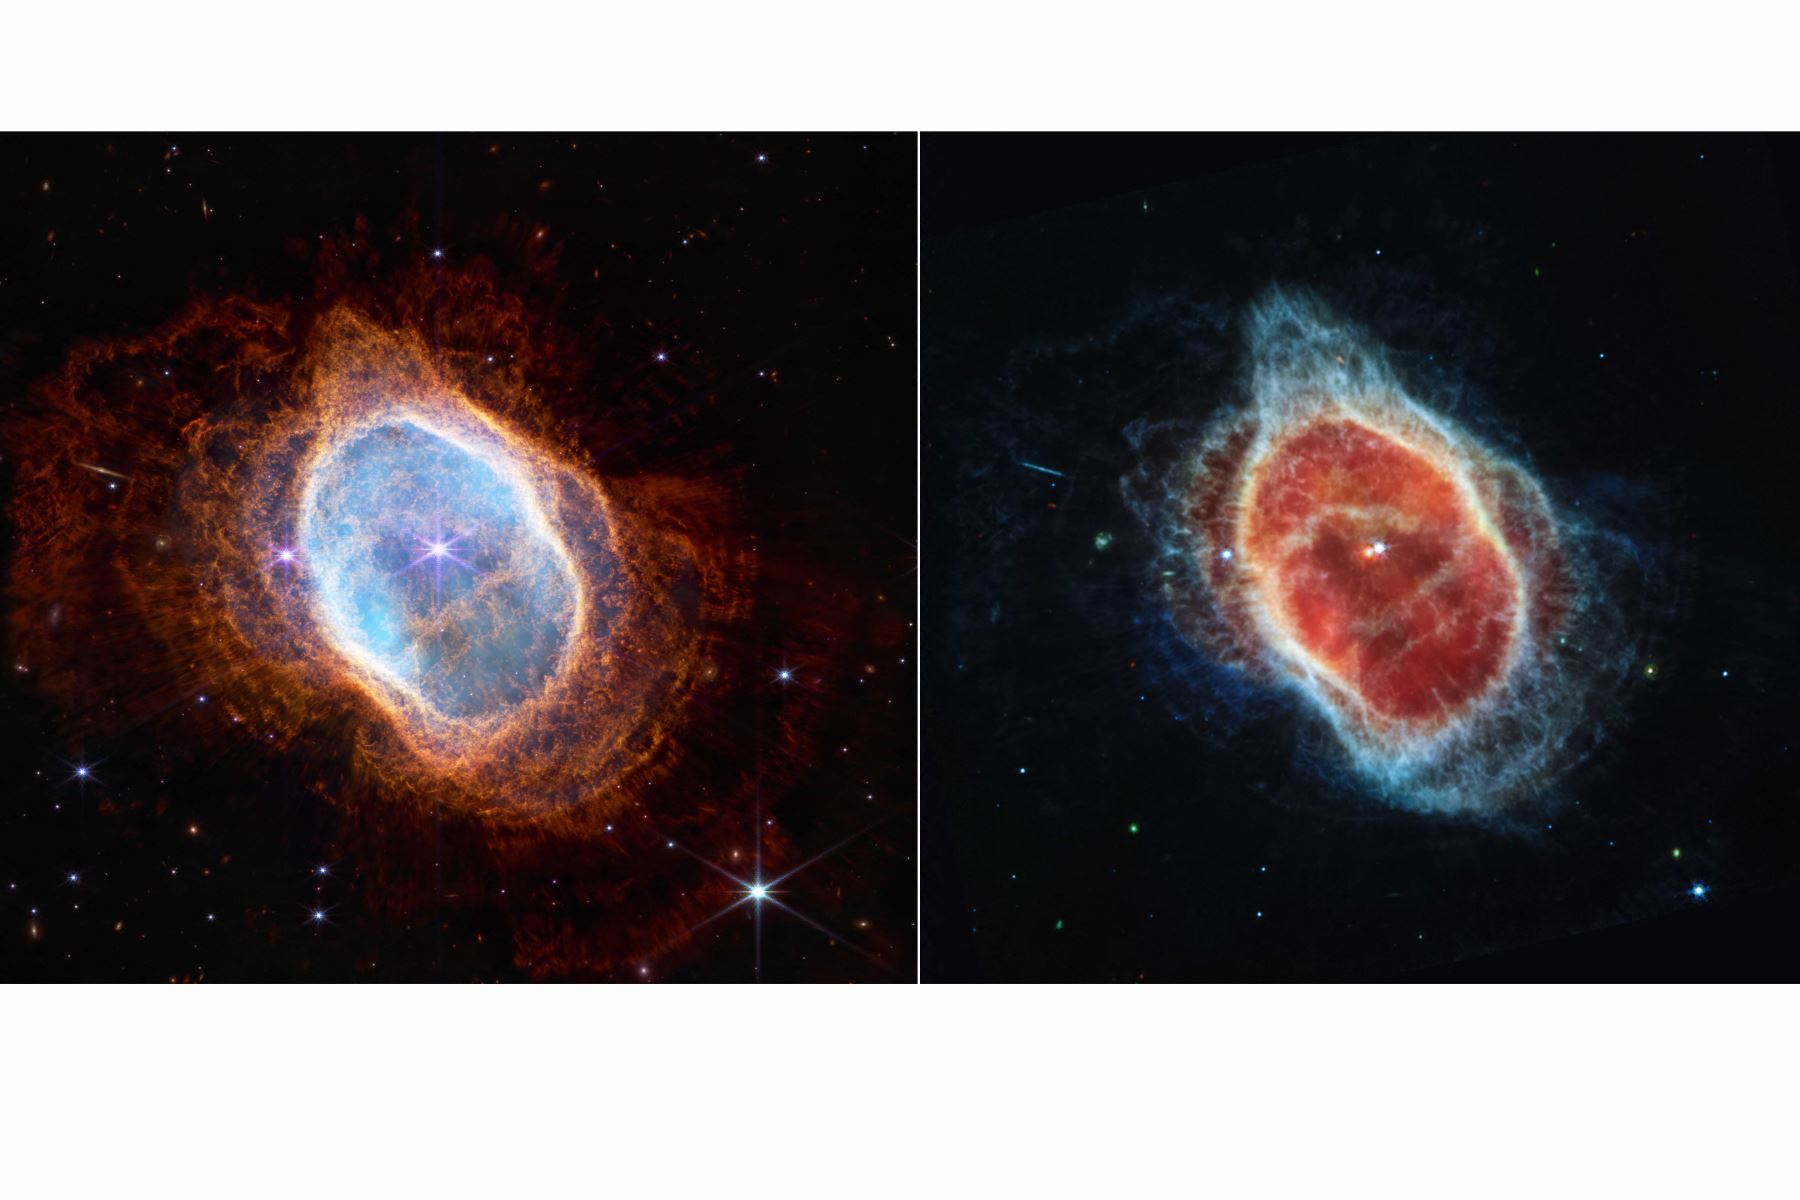 Esta imagen publicada por la NASA, muestra que la estrella más tenue en el centro de esta escena ha estado enviando anillos de gas y polvo durante miles de años en todas direcciones, y el Telescopio Espacial James Webb (JWST) ha revelado por la primera vez que esta estrella está cubierta de polvo. Dos cámaras a bordo de Webb capturaron la imagen más reciente de esta nebulosa planetaria, catalogada como NGC 3132 y conocida informalmente como la Nebulosa del Anillo Sur, que se encuentra aproximadamente a 2500